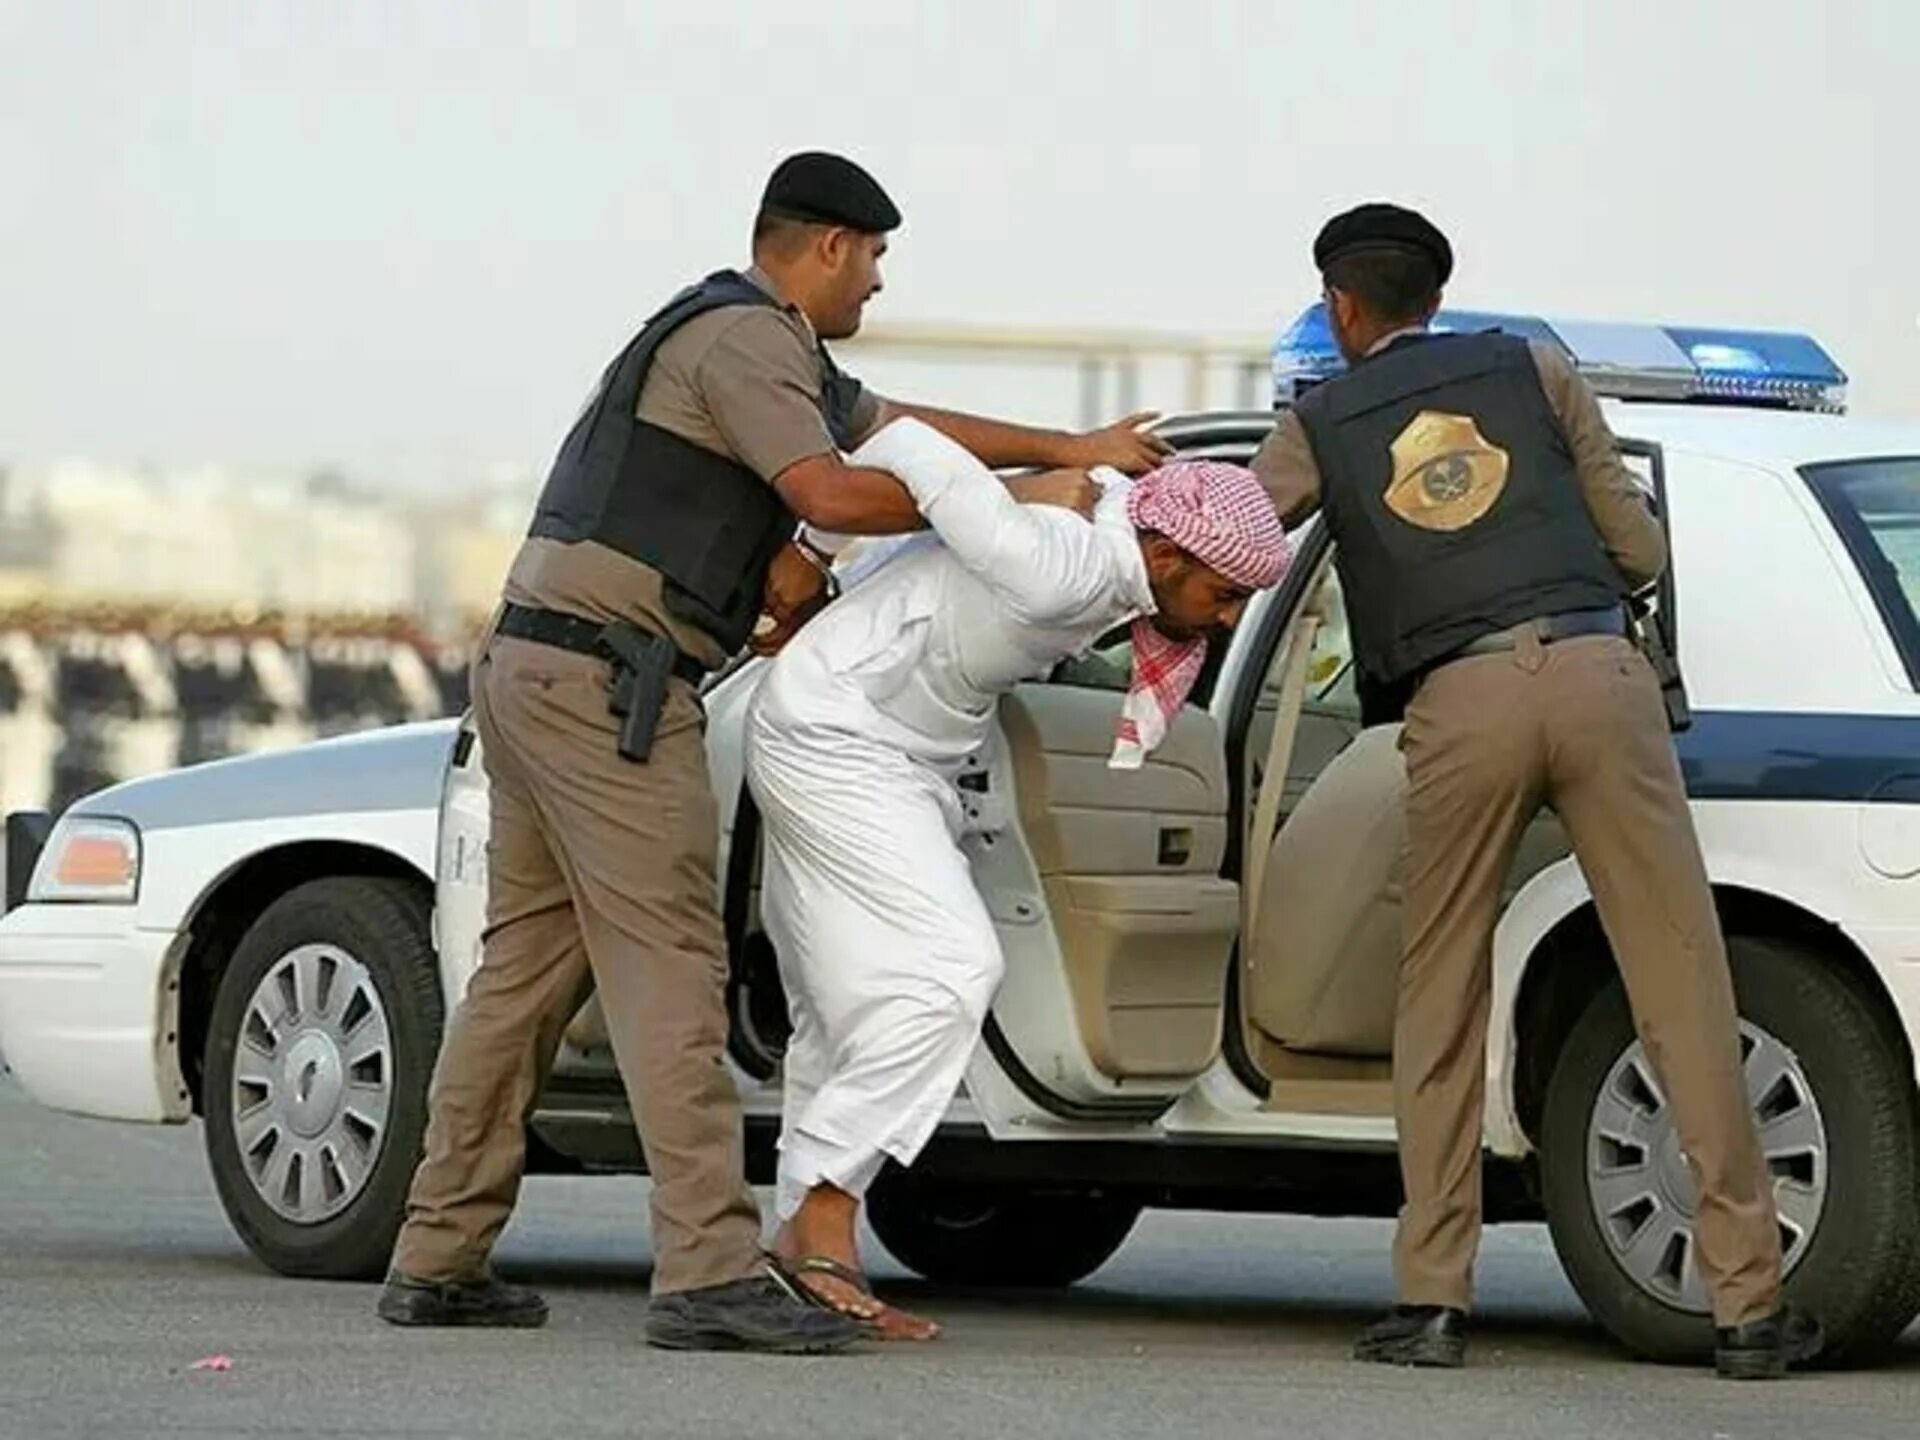 Смертная казнь в оаэ. Полиция нравов Саудовской Аравии. Религиозная полиция в Саудовской Аравии. Шариатская полиция Саудовской Аравии. Шариатская гвардия Саудовской Аравии.